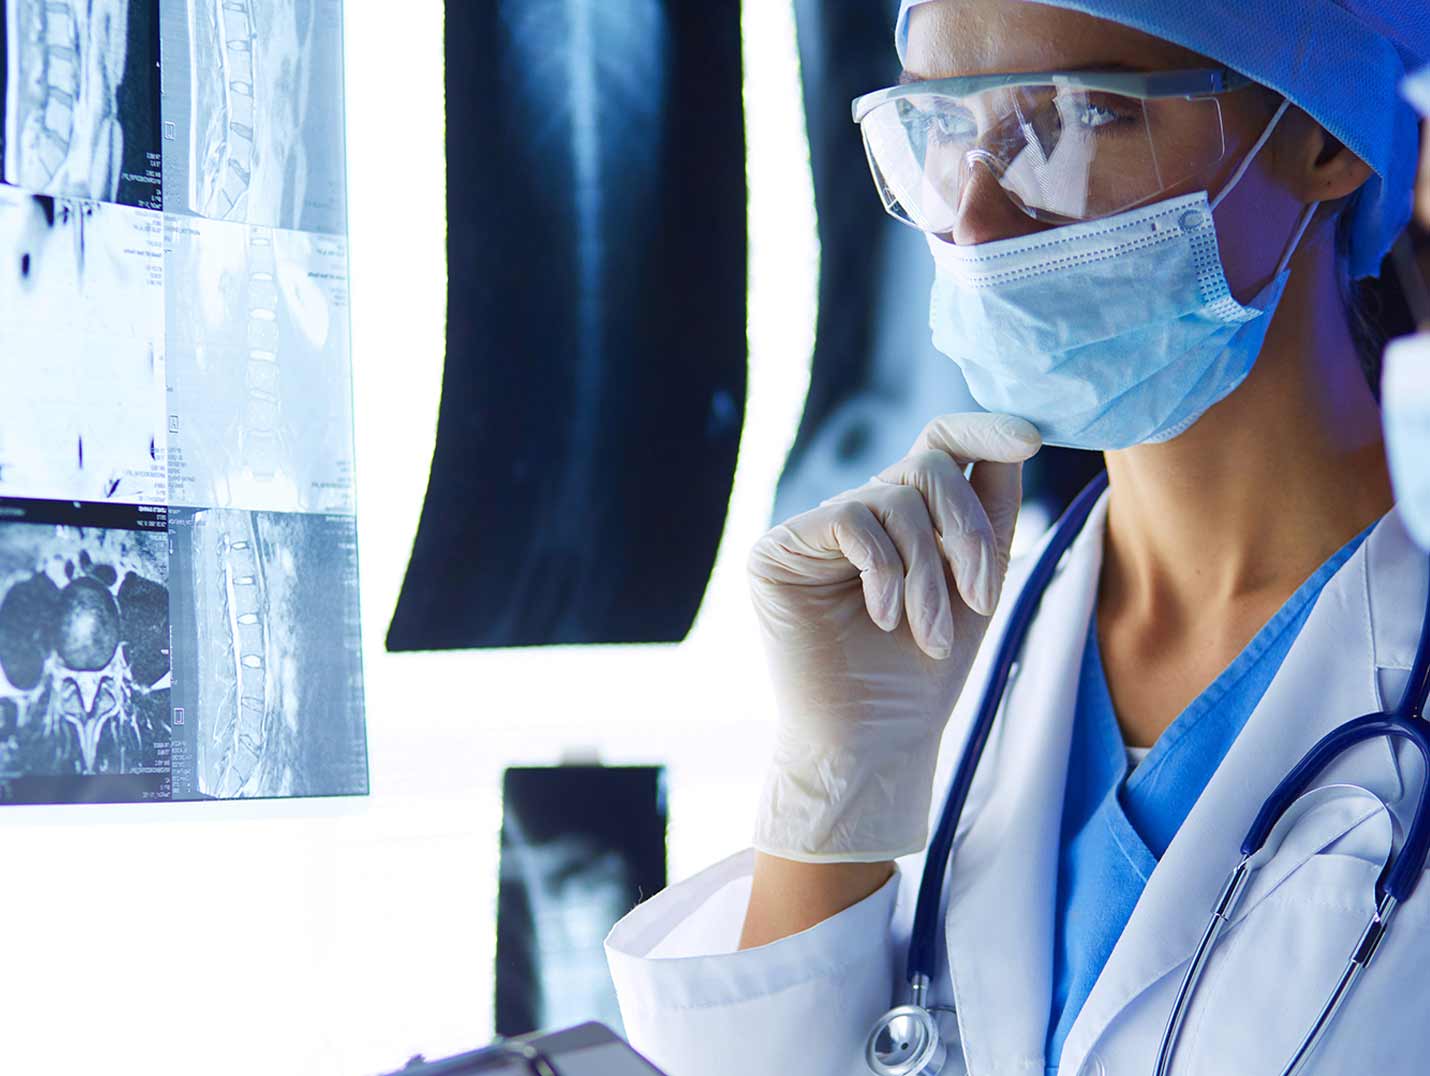 Doctora con bata blanca, cubrebocas, gorro quirúrgico y guantes blancos, observando detenidamente una radiografía